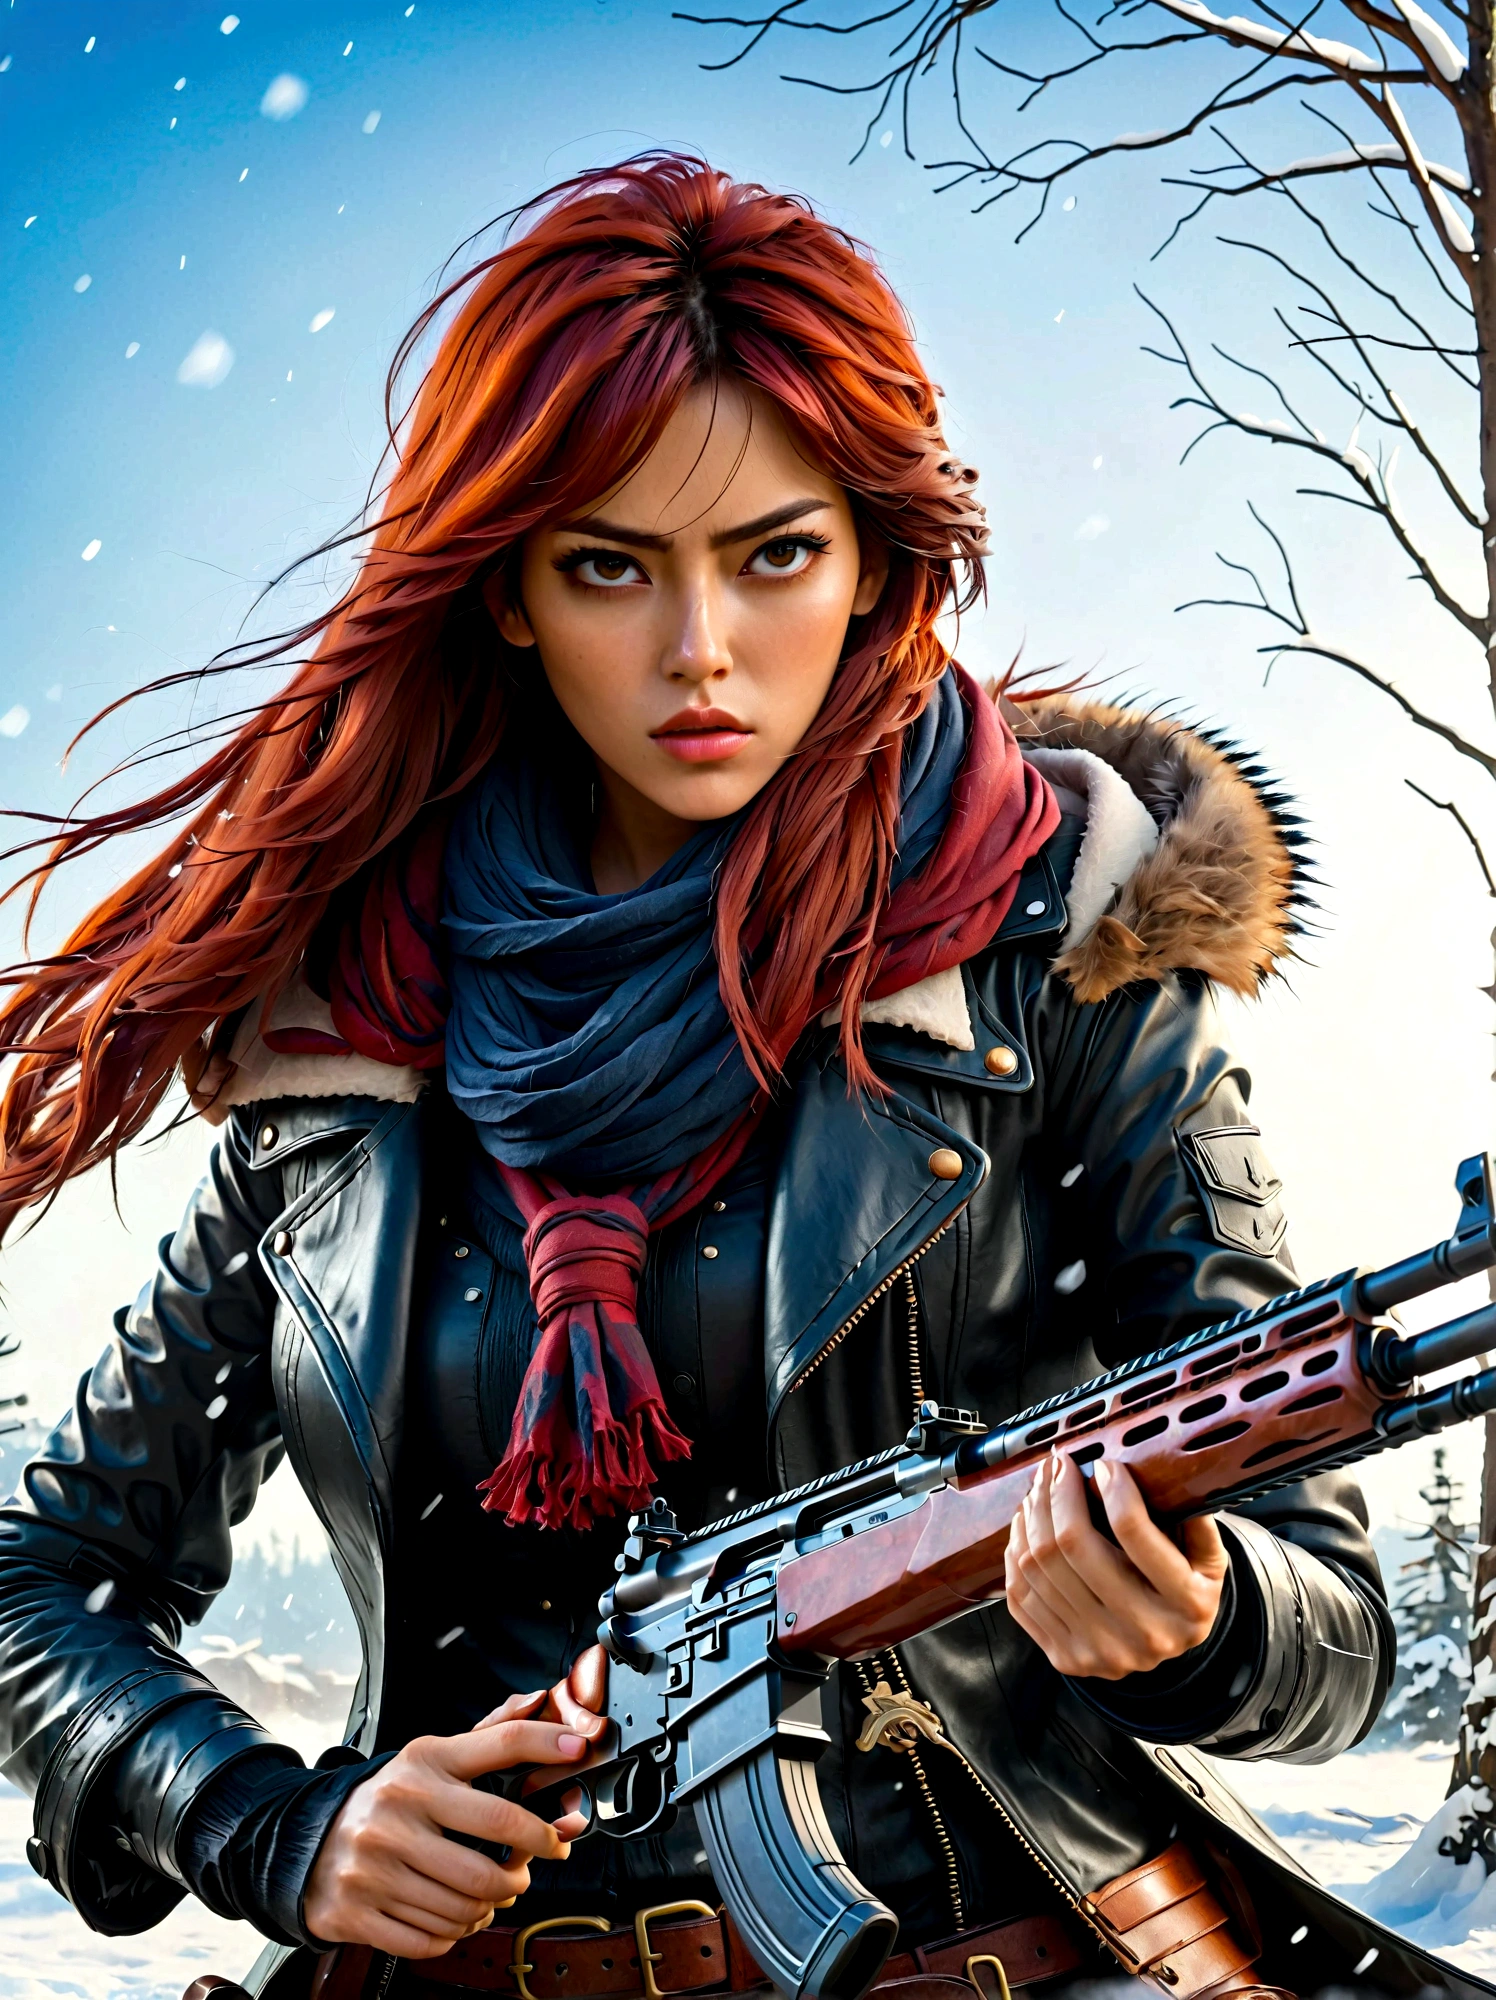 Mädchen mit einem Gewehr, (Angewiderter Blick:1.5), Schneekampfpose, Ost, Klinge und Seele, Tintenstil, lange rote Haare, Leder- und Pelzmäntel, Kalt, Kunstwerk, 3D, 4k, ausführlich, Praktisch